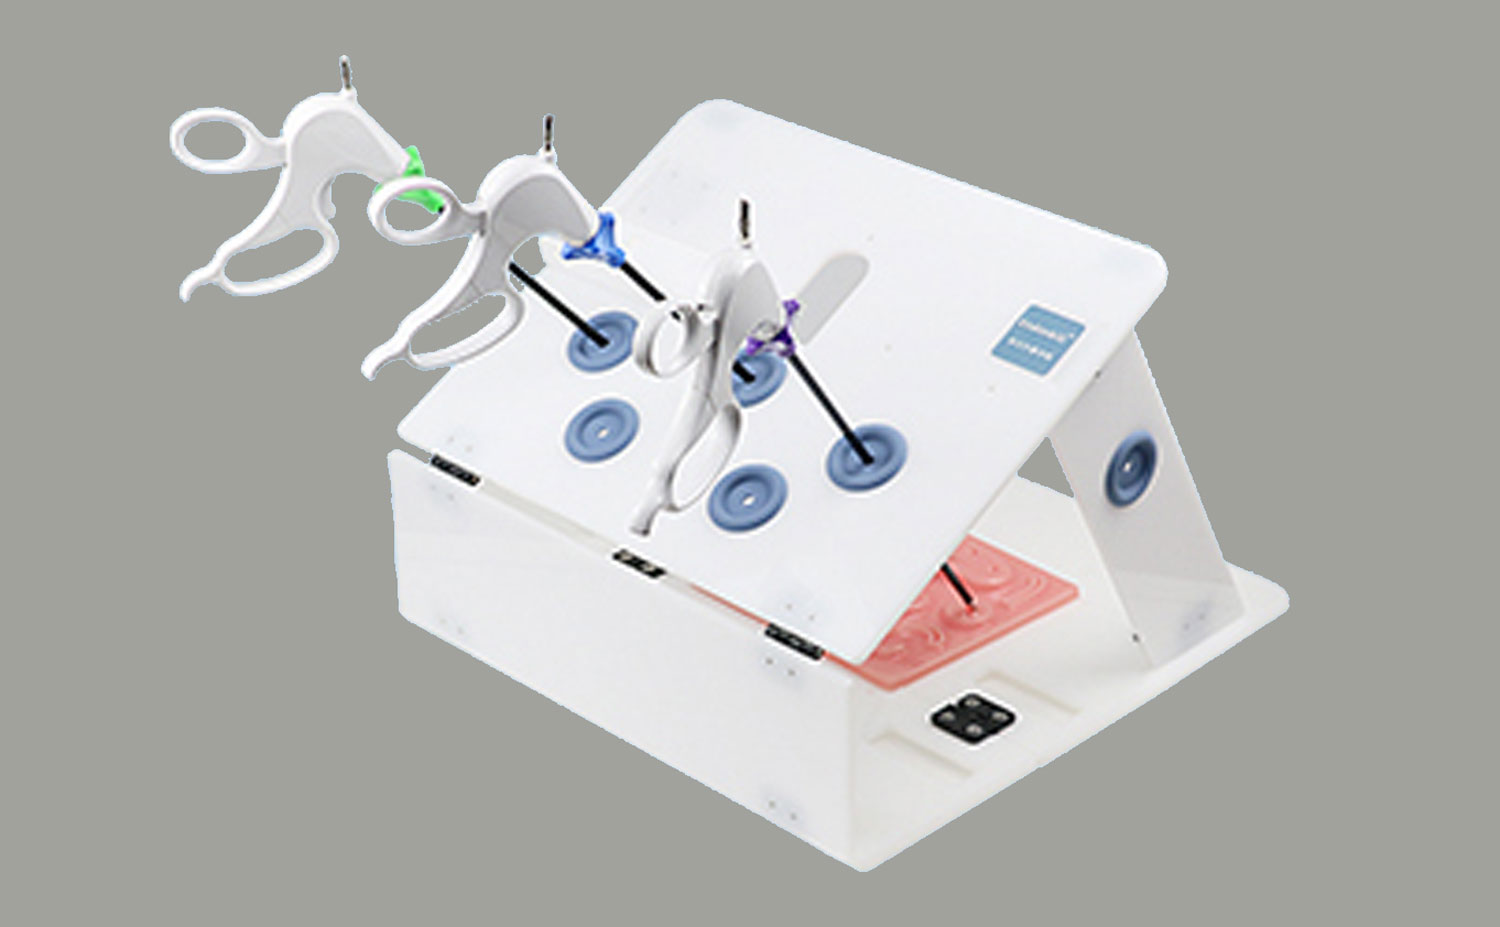 Waarom kiezen voor de laparoscopische trainingsbox van Smailmedical